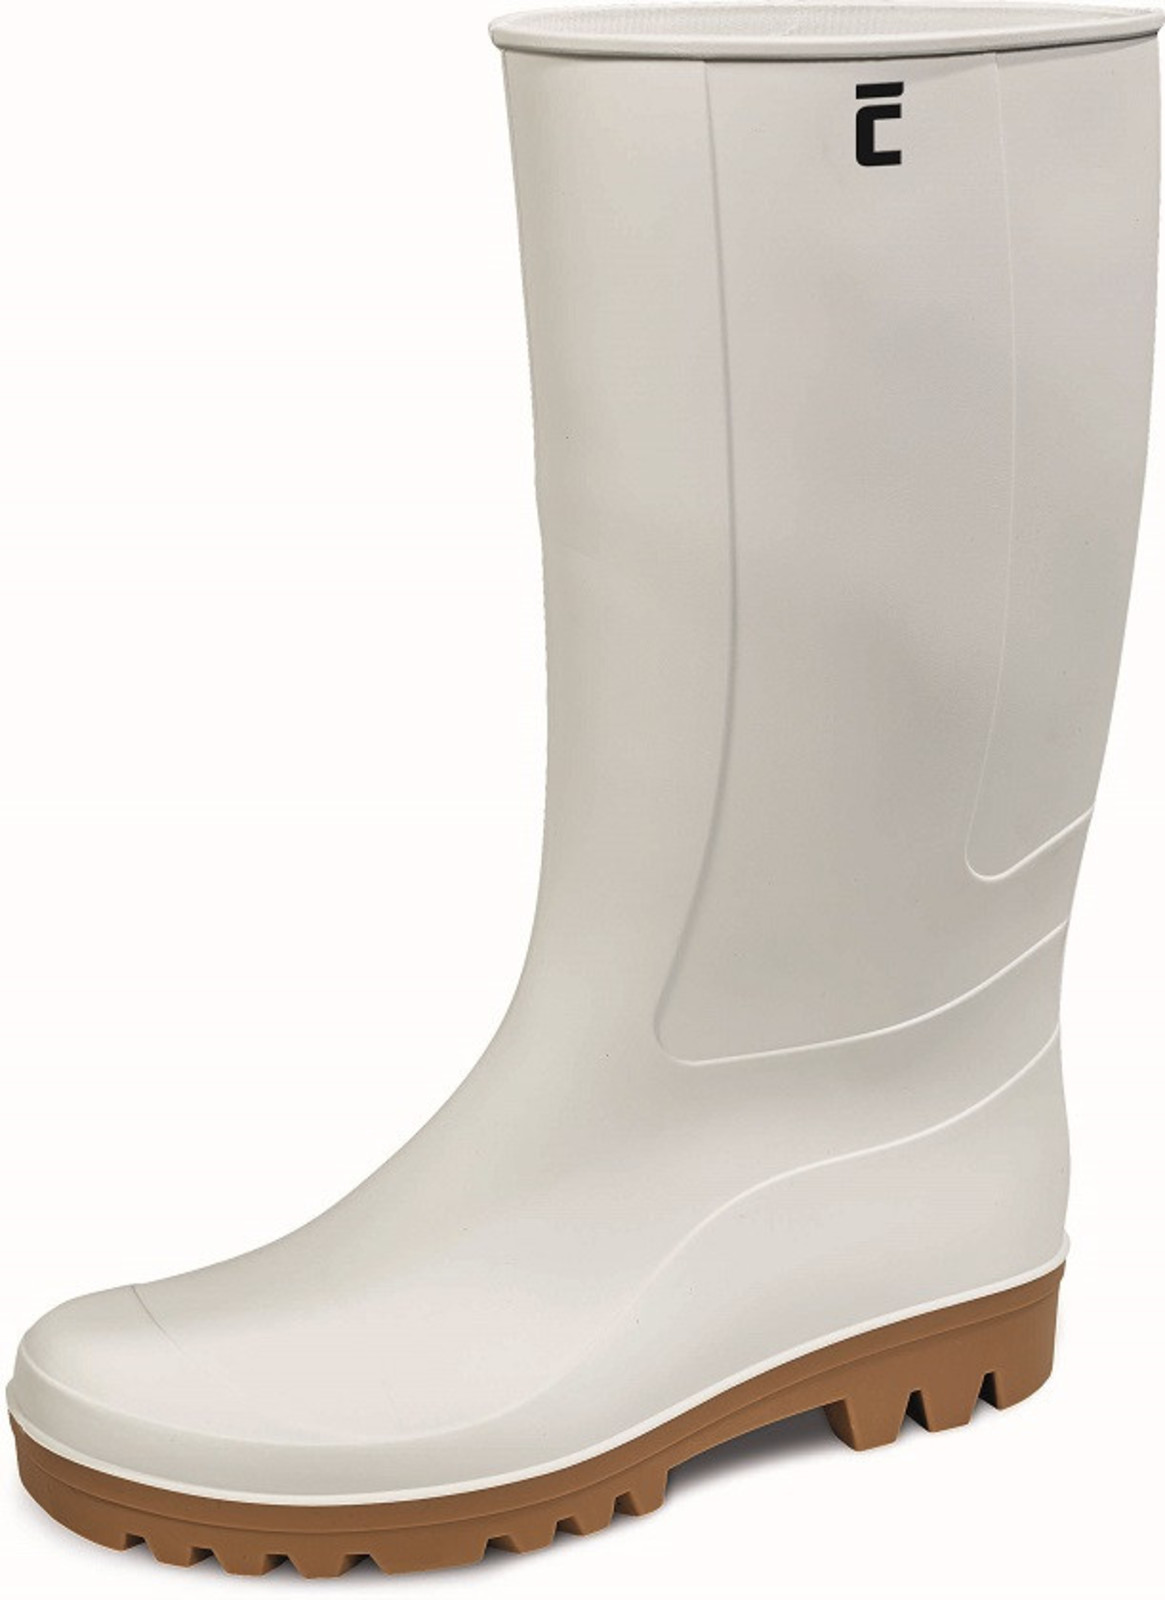 Gumáky Boots BC Food O4  - veľkosť: 47, farba: biela